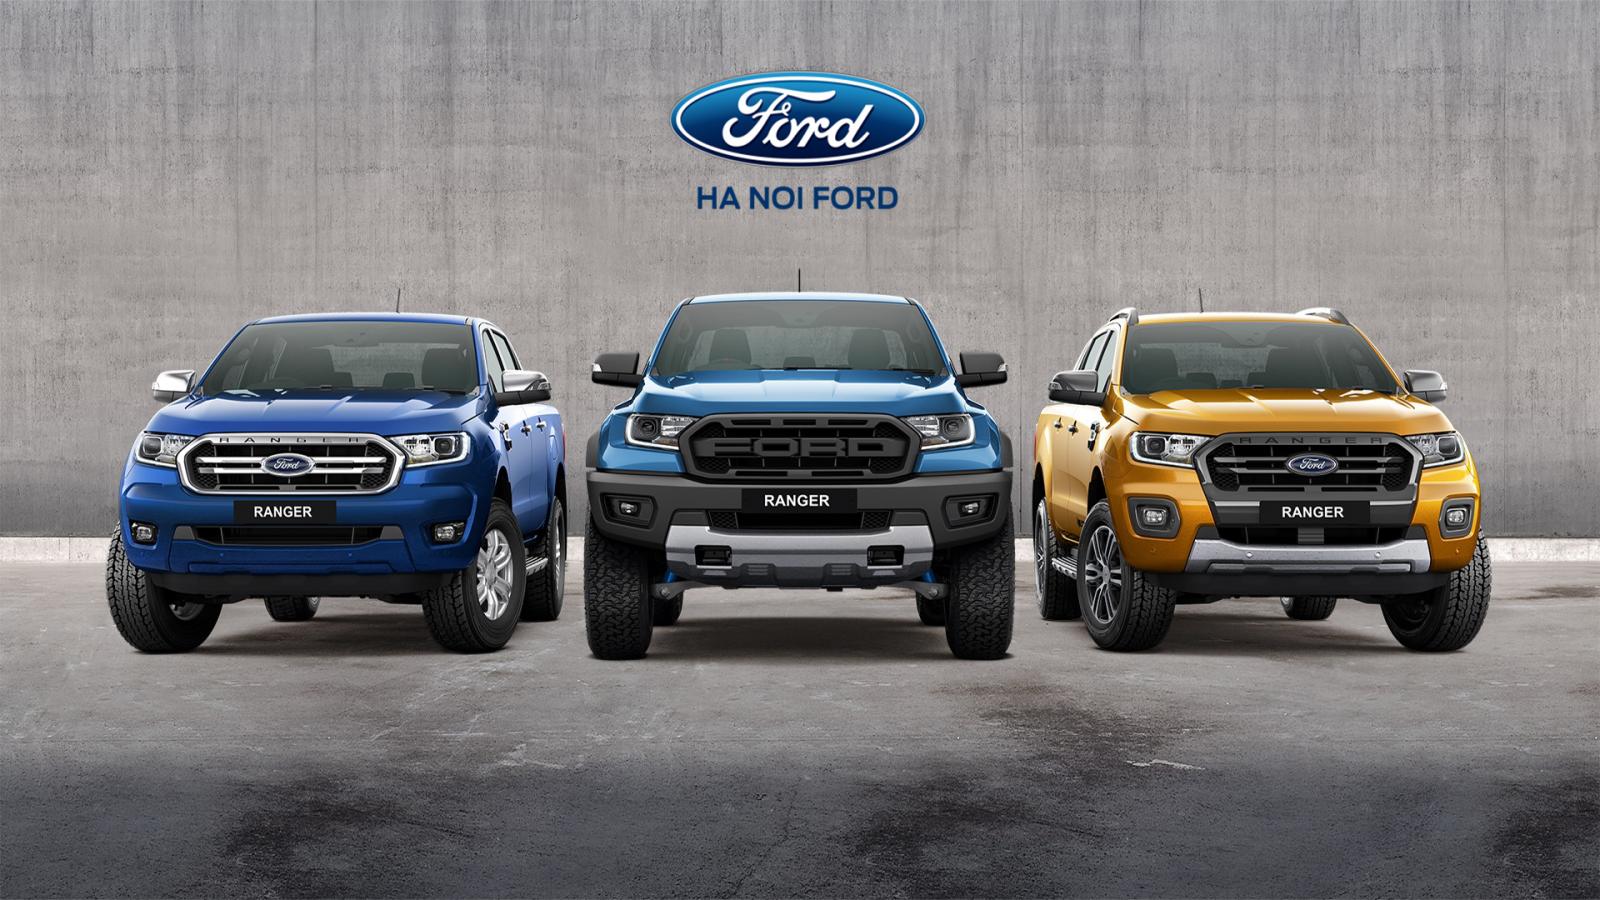 Bảng giá xe Ford tháng 82022 Ưu đãi đến 40 triệu và bổ sung Everest Thế  Hệ Mới